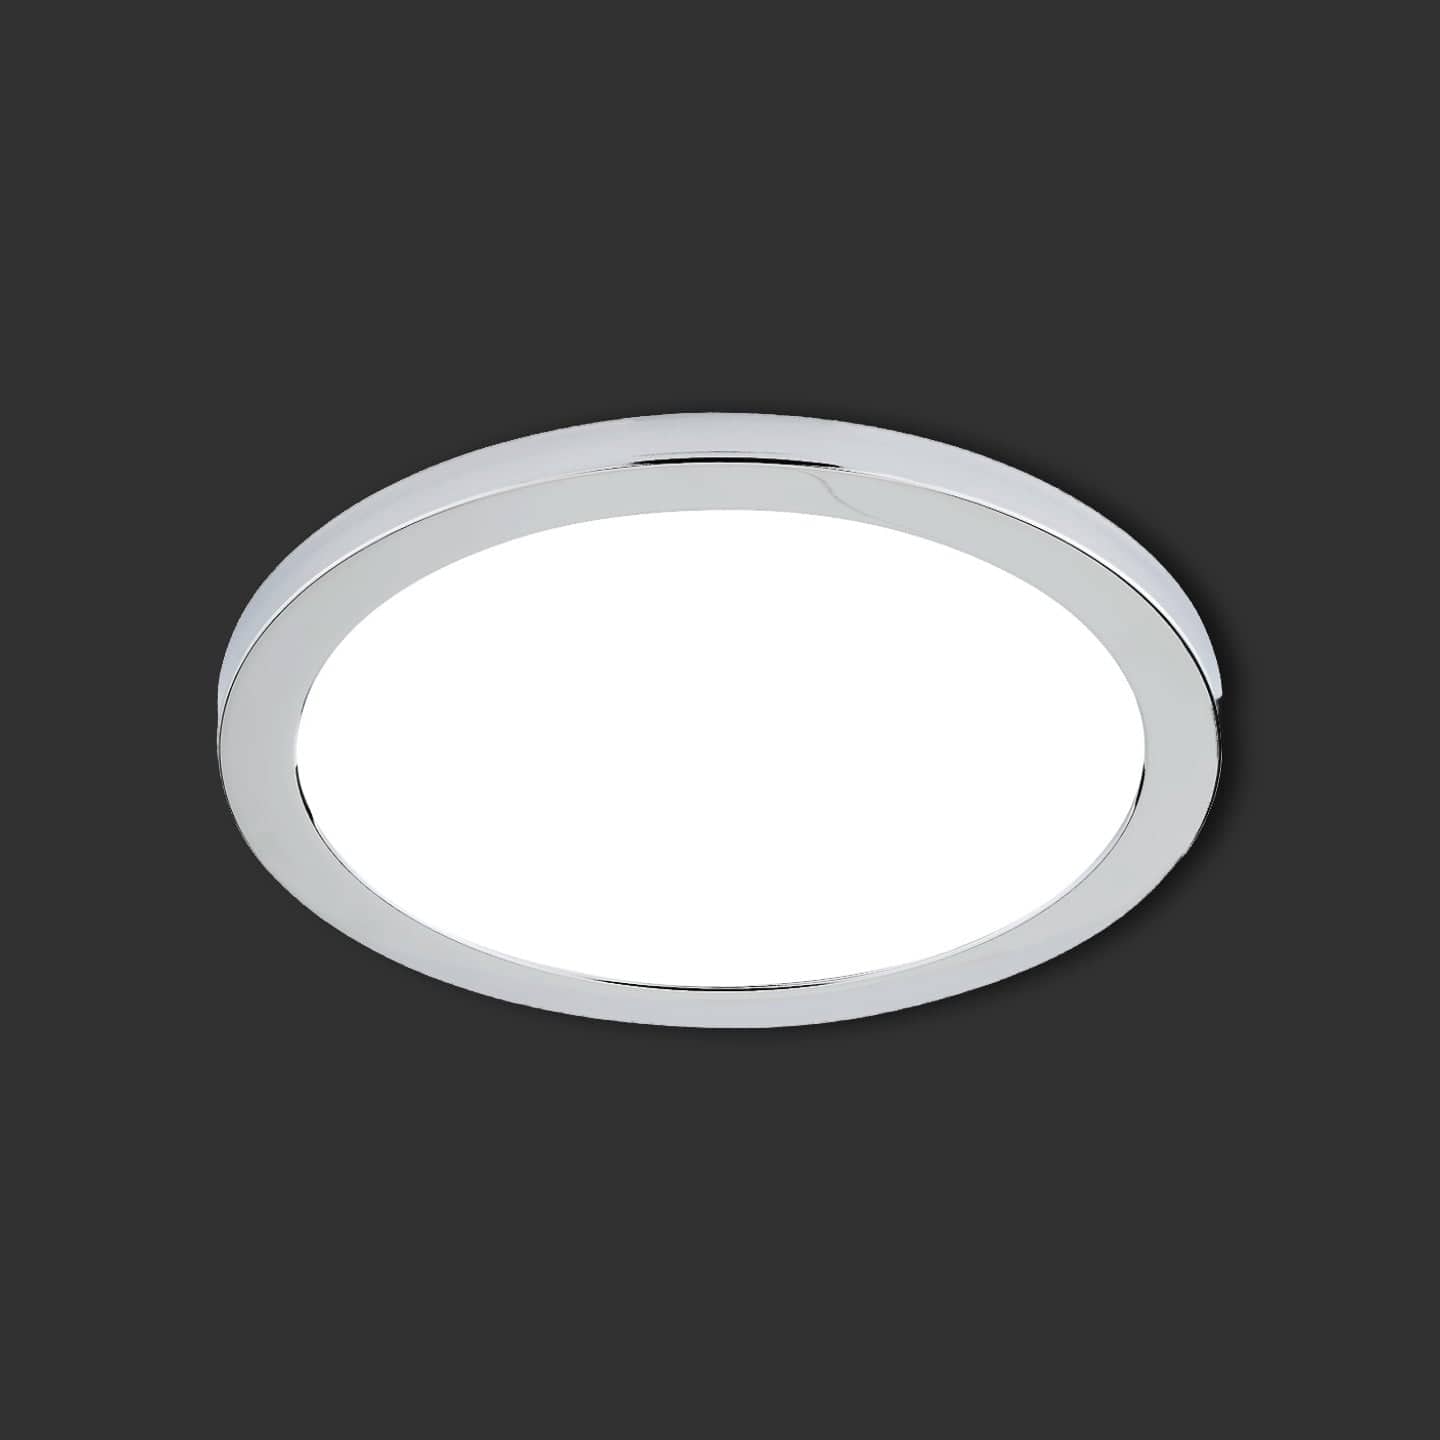 Lights  -  Forum Spa Chrome Magnetic Ring For 24W Tauri Flush Bathroom Light  -  50155602